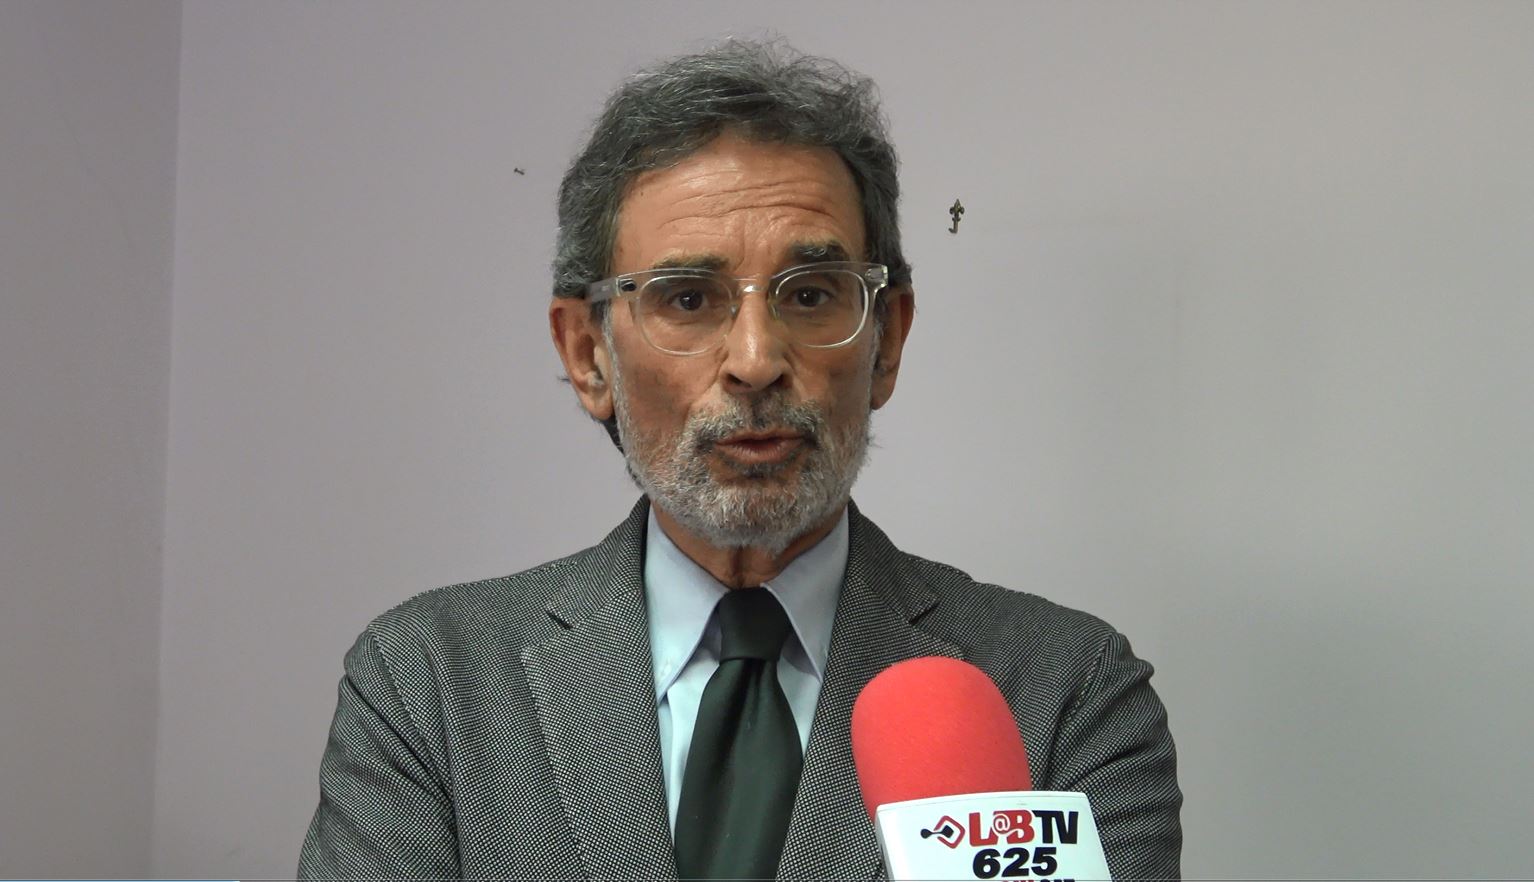 Perifano: “Il sindaco non ama il confronto sui temi amministrativi e preferisce parlare di se stesso”